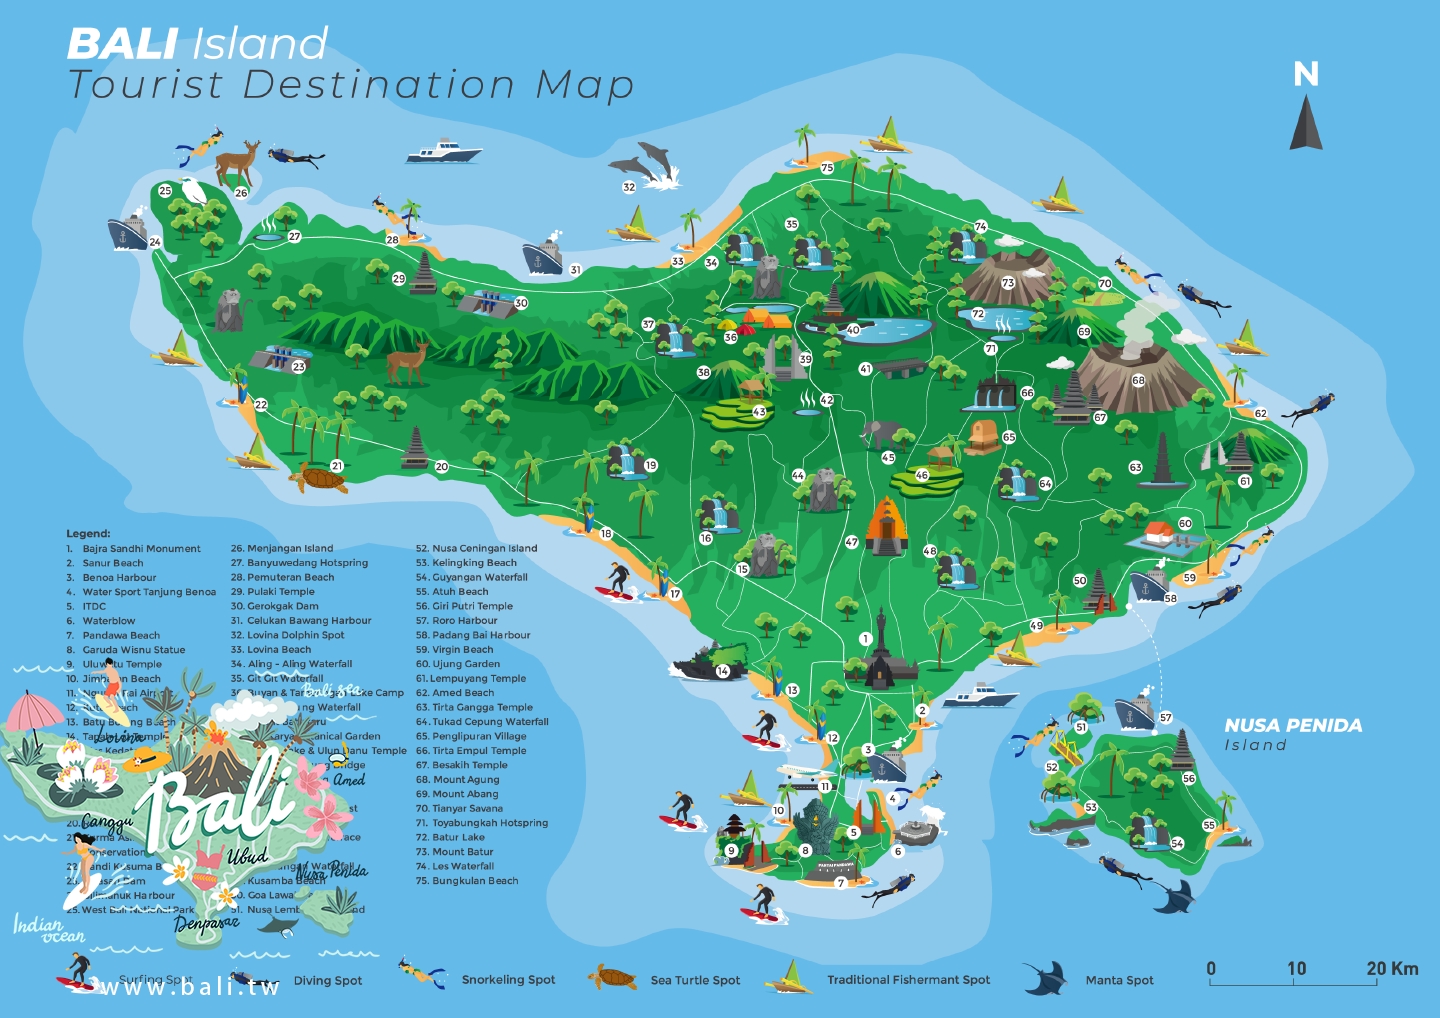 峇里島旅遊推薦 - 峇里島機票 - 峇里島介紹 - 峇里島VILLA - 峇里島景點推薦 - 峇里島景點地圖 - 巴里島行程規劃 - 峇里島特色 - 峇里島自由行 002.png